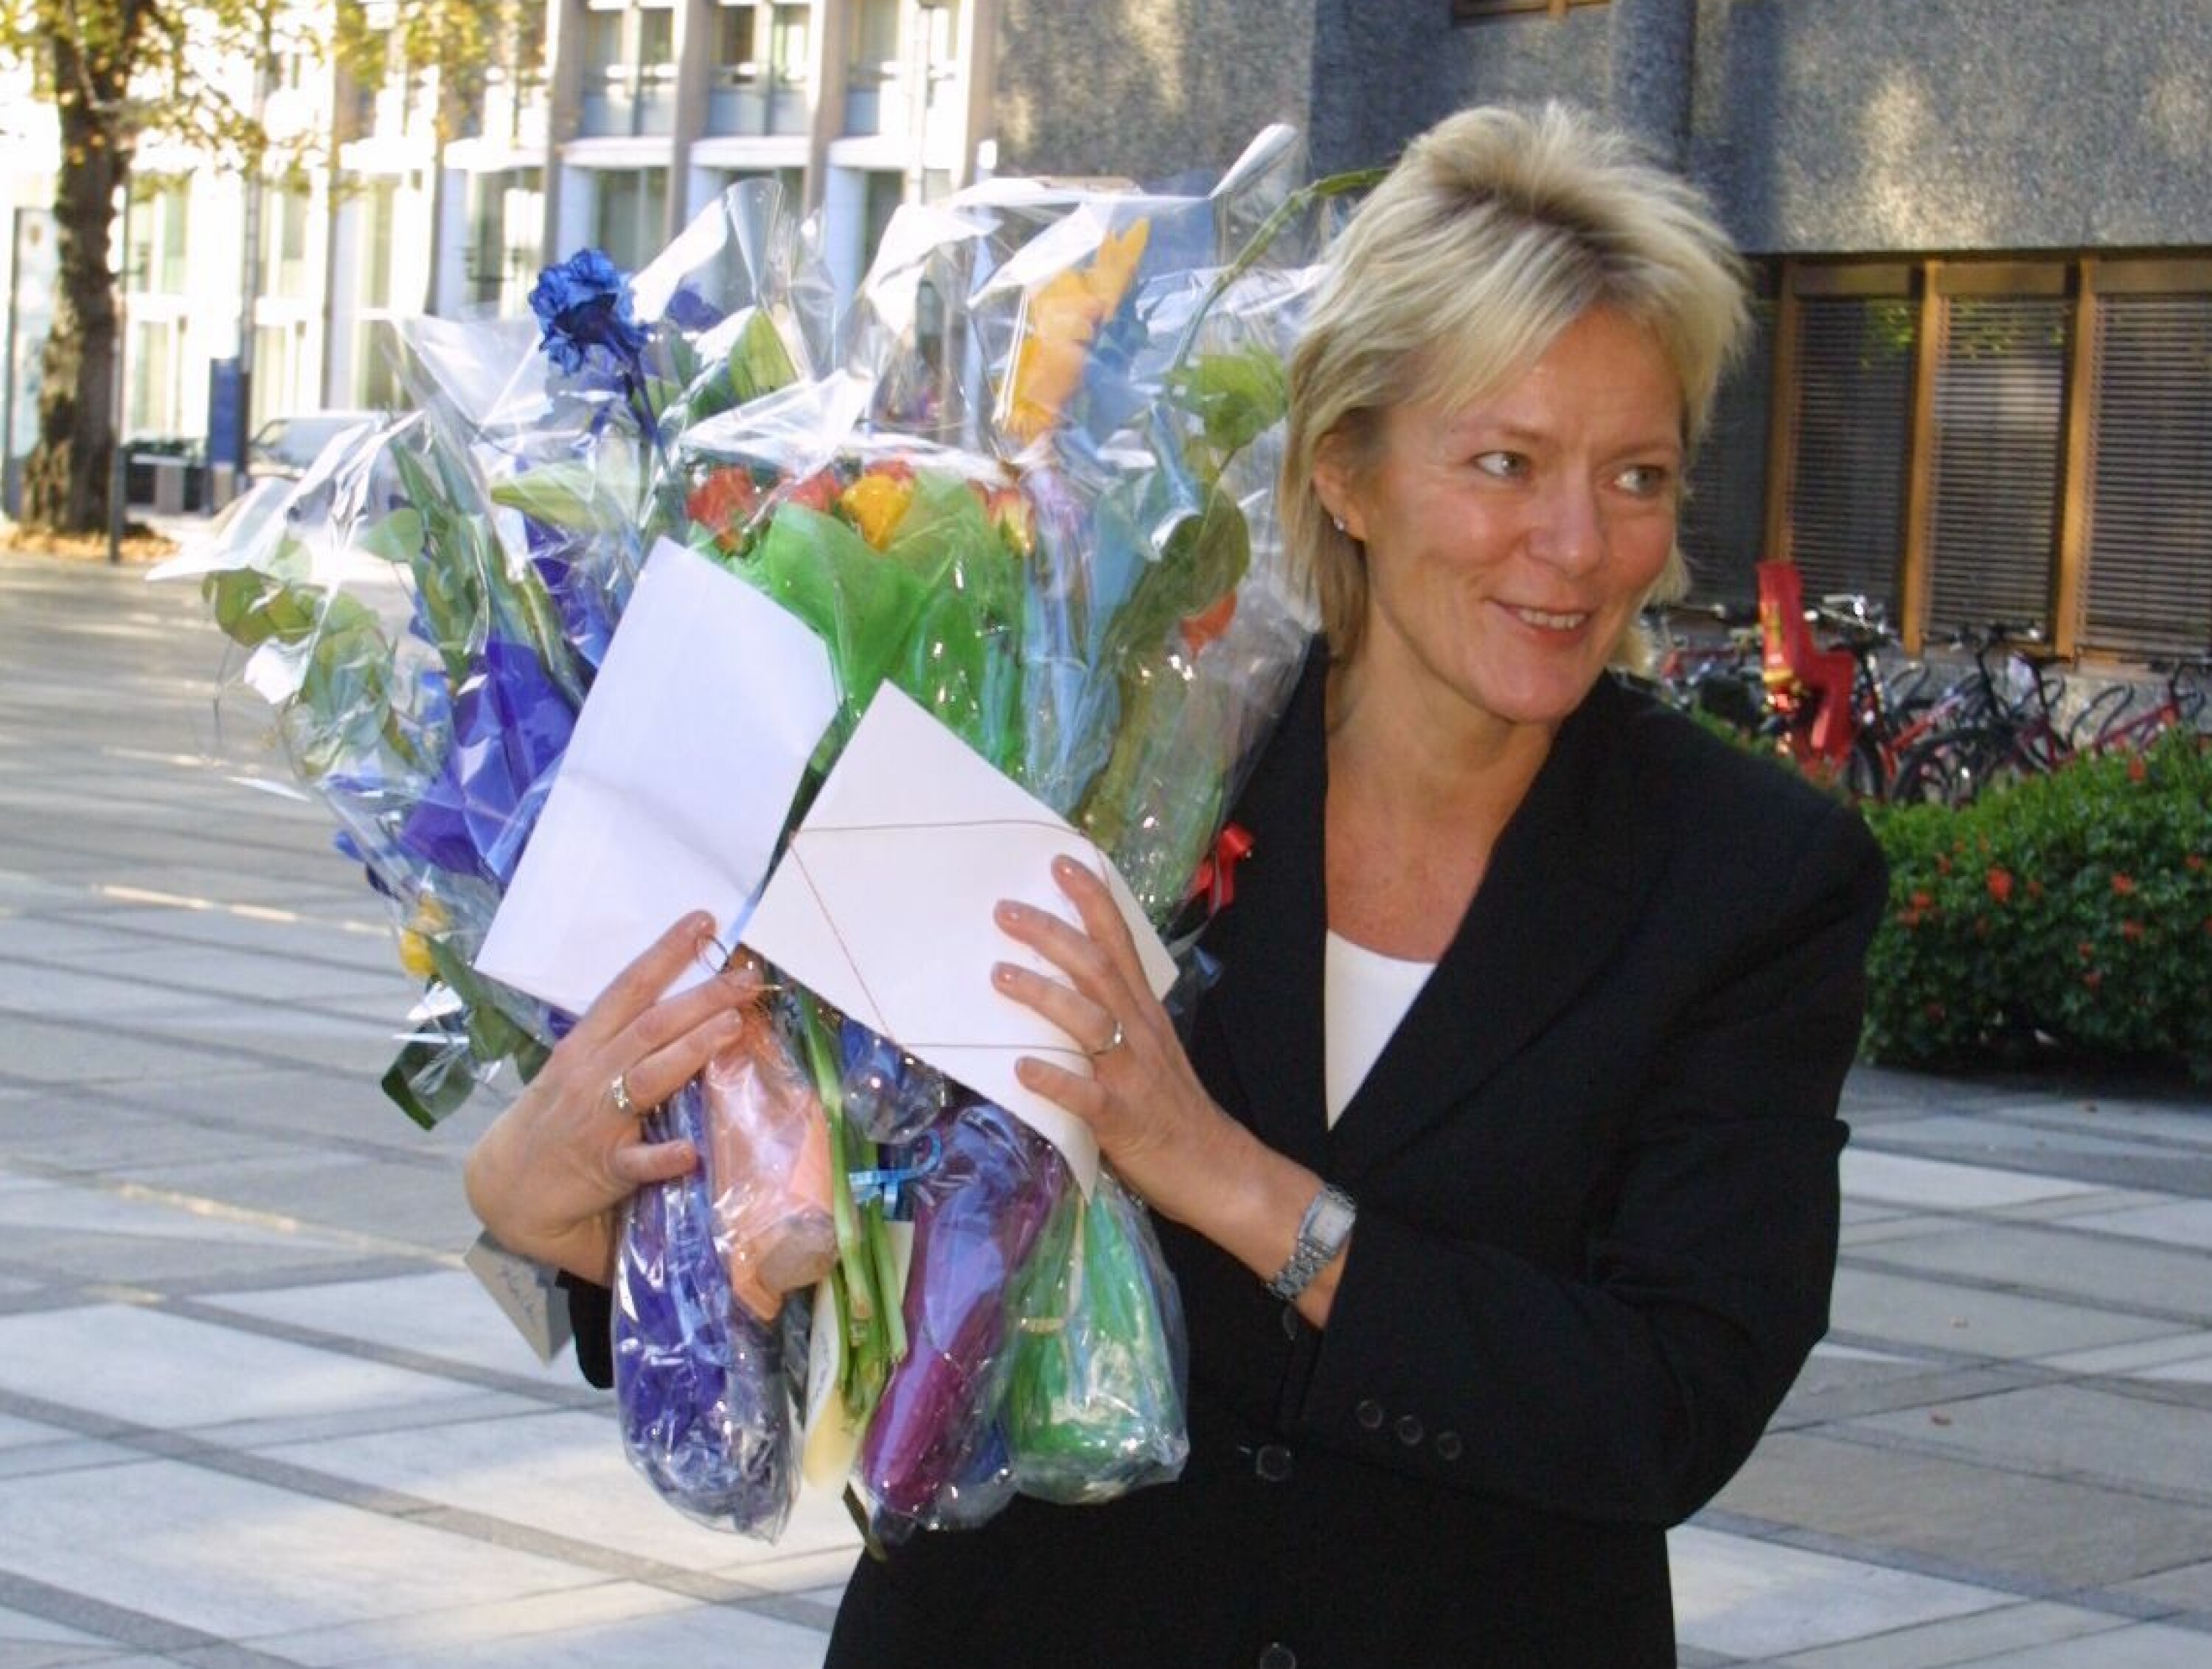 Kristin Clemet var 44 år da hun overtok som utdanningsminister etter Aps Trond Giske.